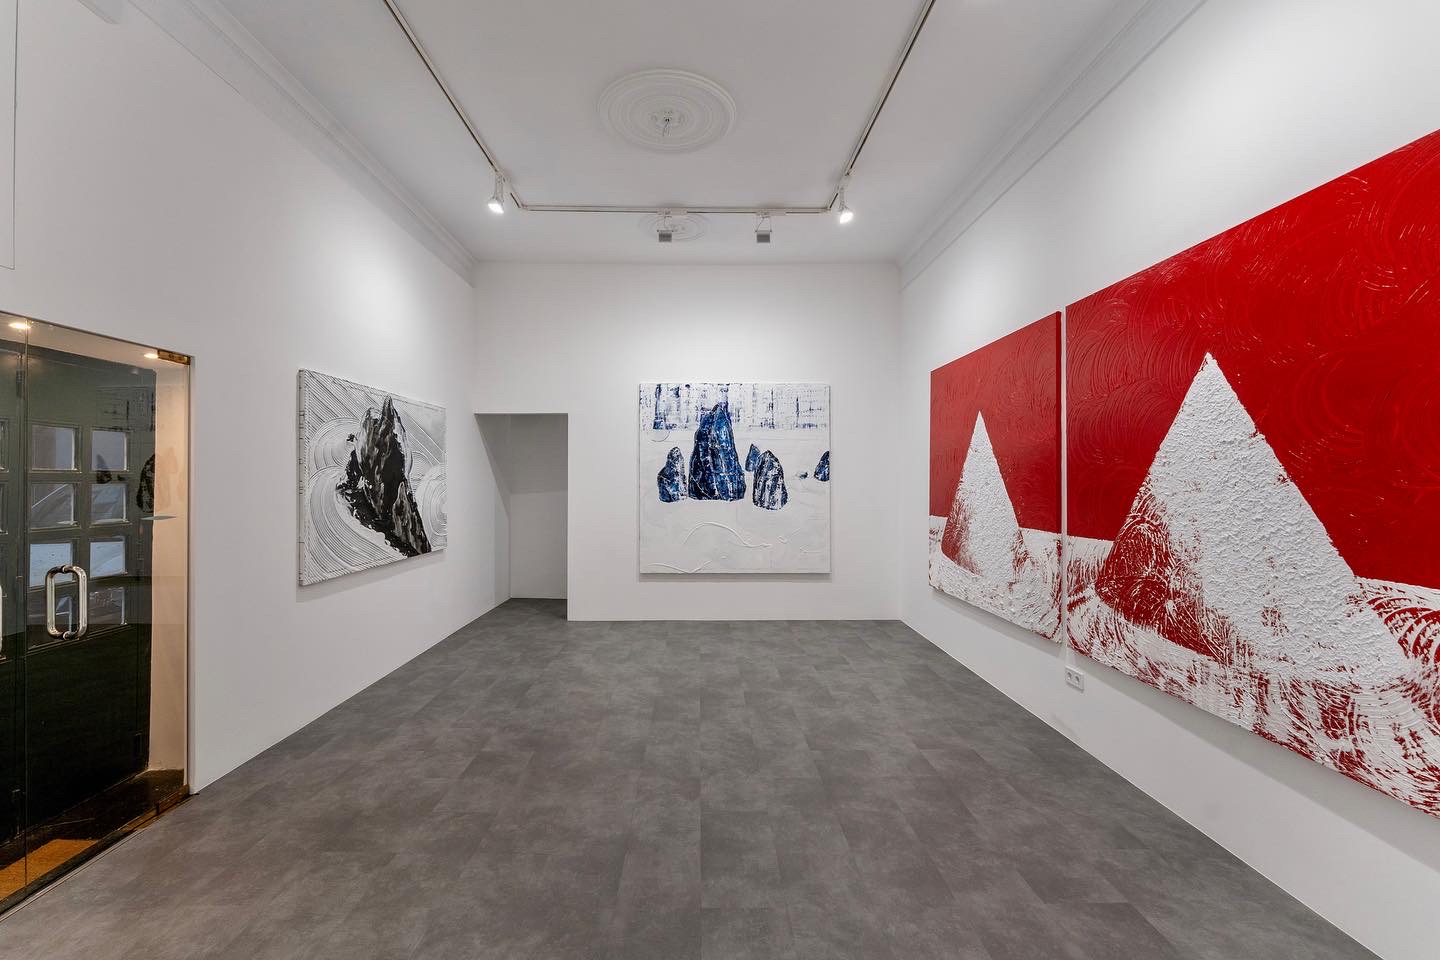 Equinoccio, Kmilo Morales, Galería La Cometa, Madrid. (2022) - Kmilo Morales